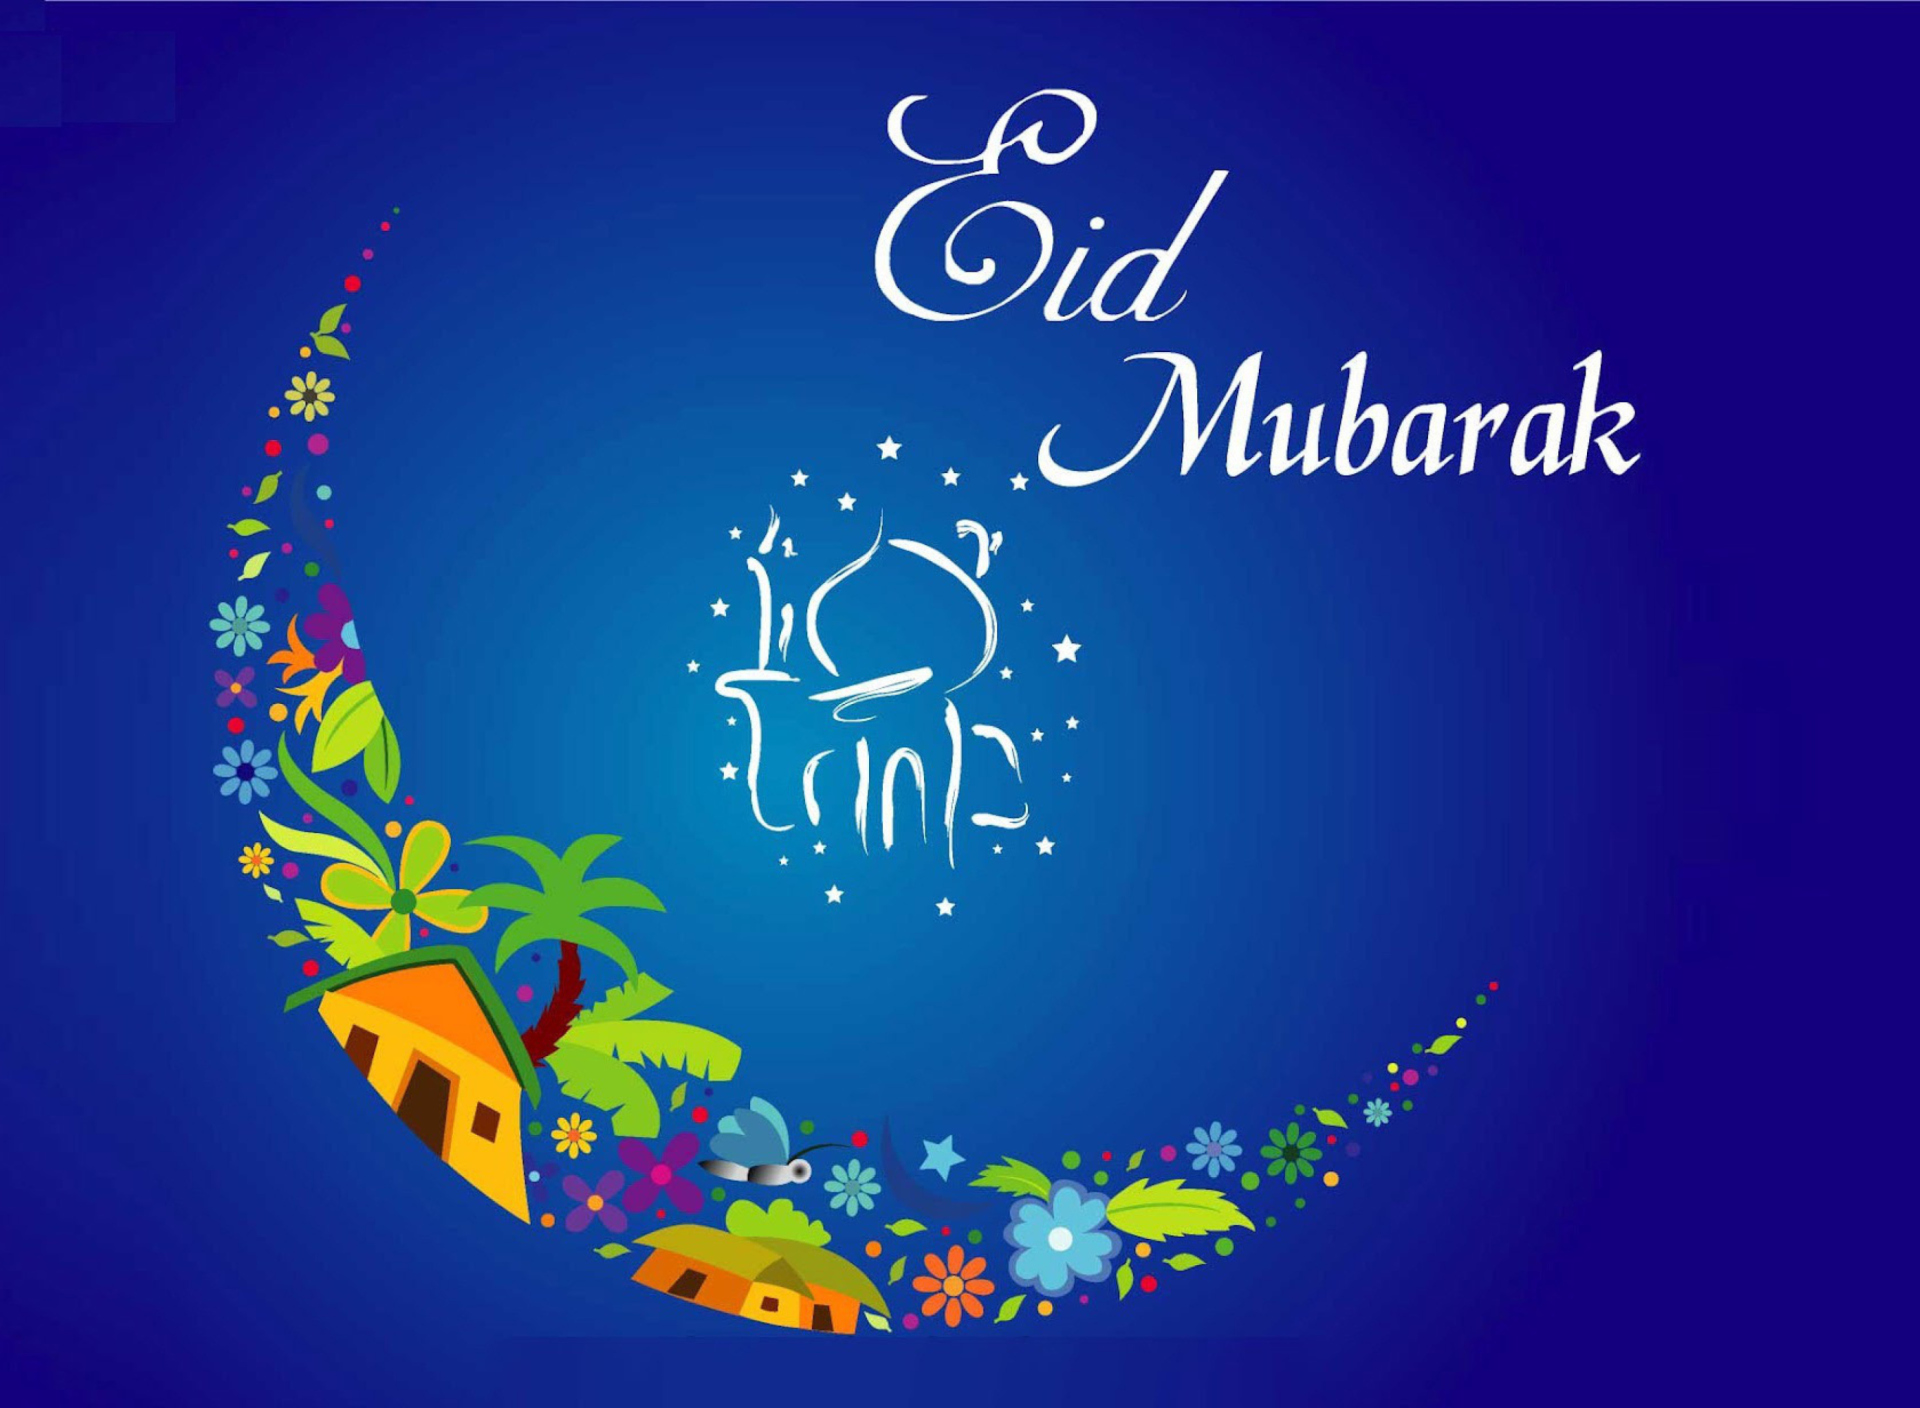 С праздником Eid Mubarak